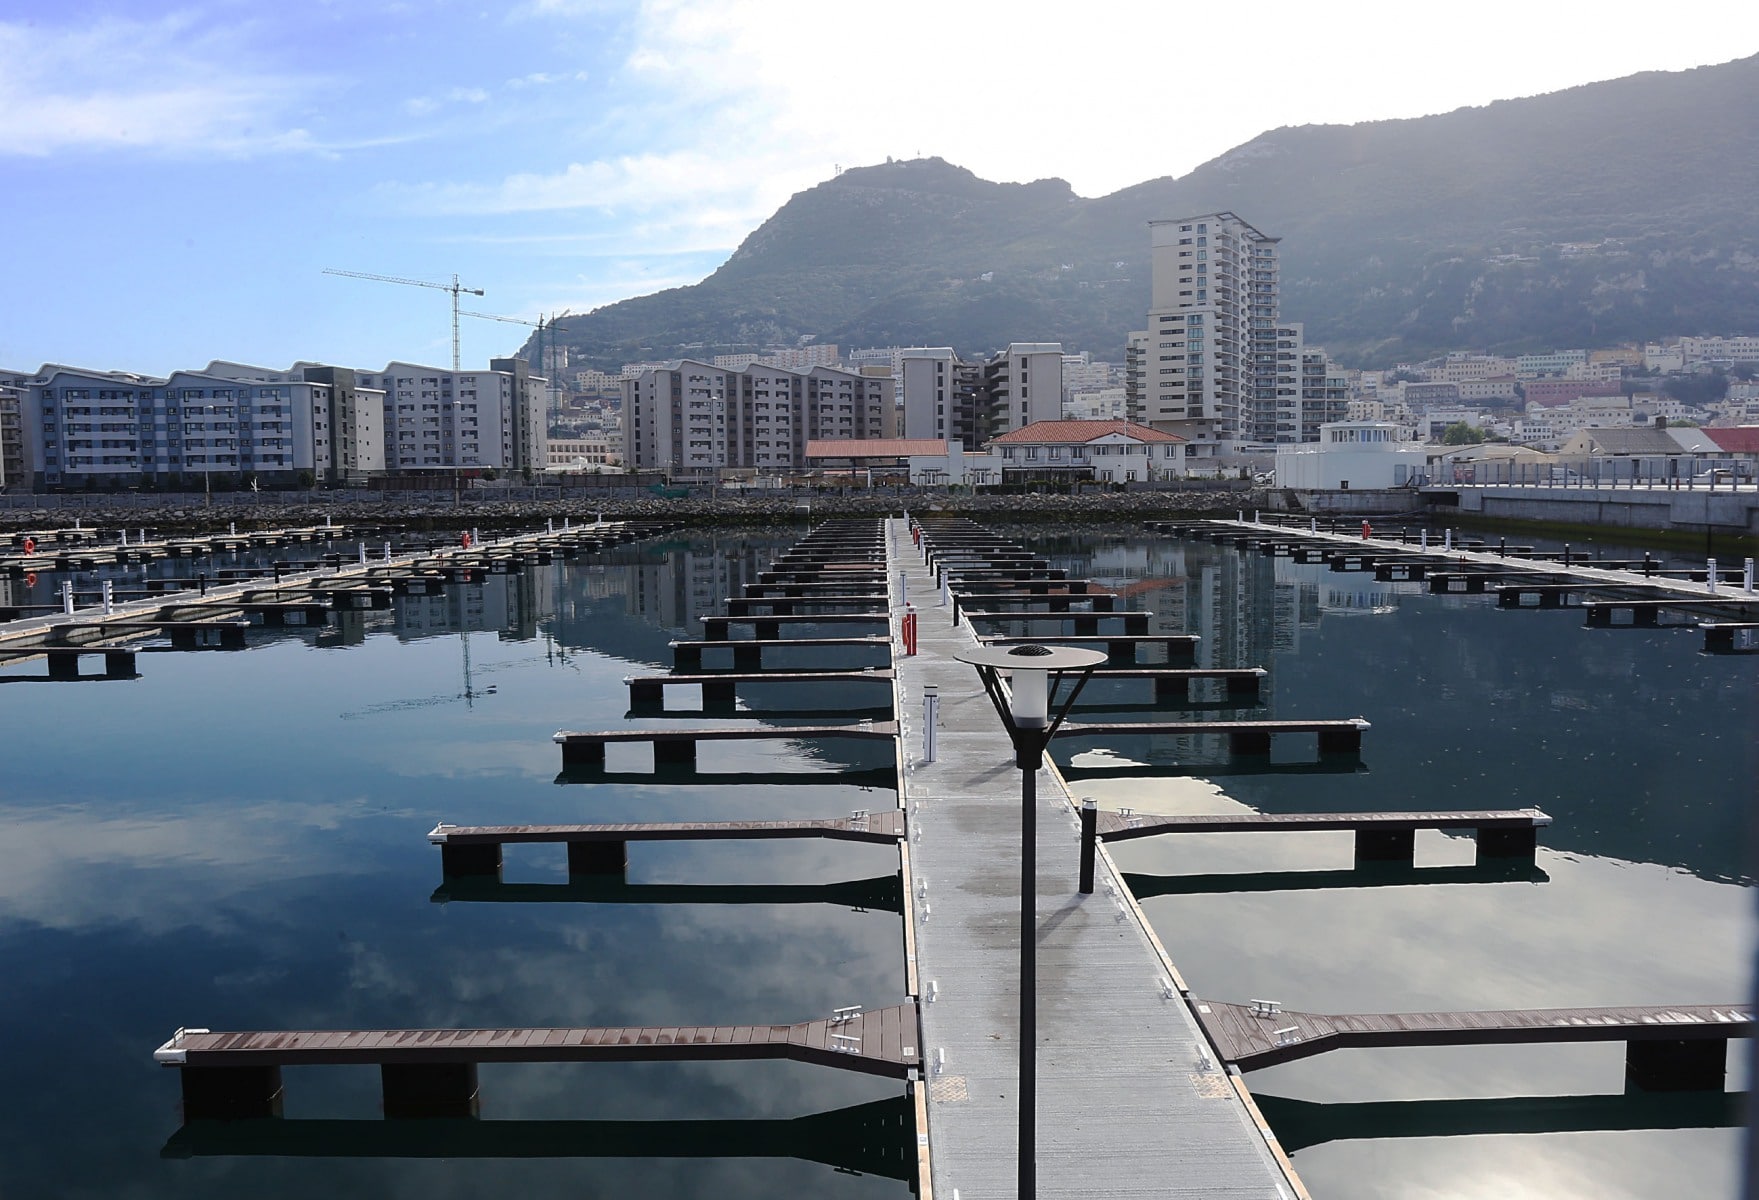 160421 - Inauguración de la nueva marina en Gibraltar para barcos pequeños